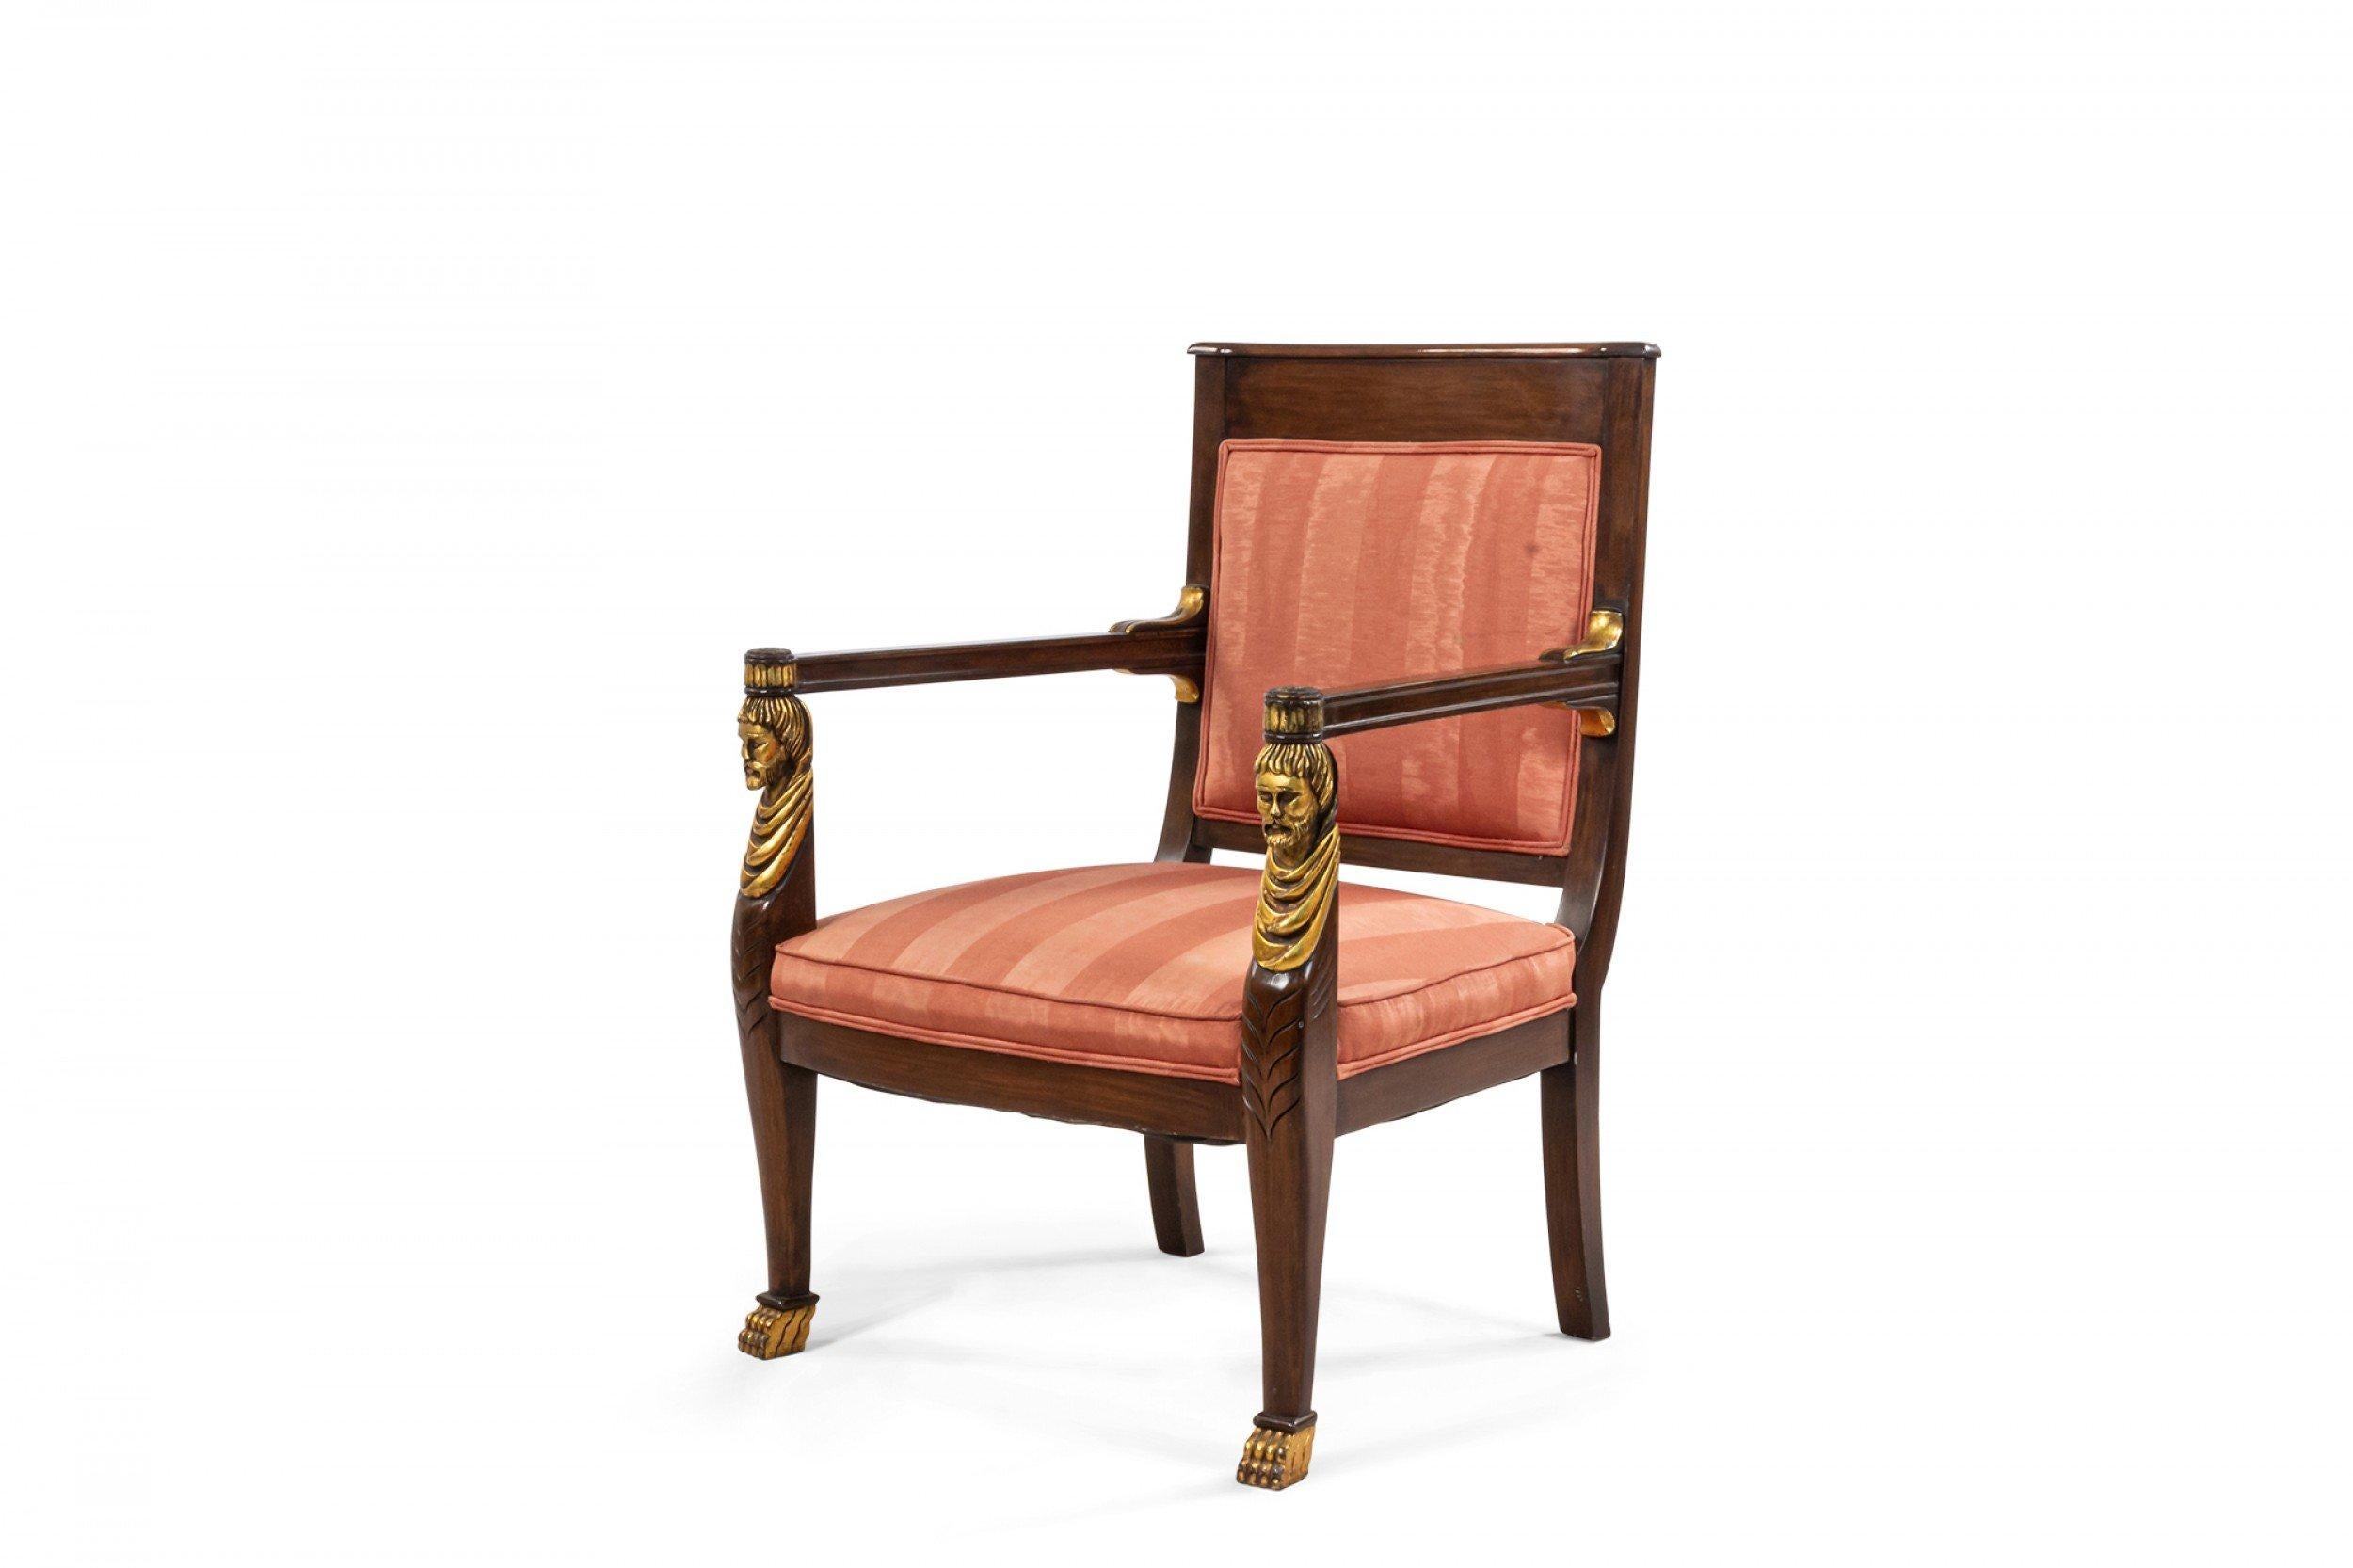 Paire de fauteuils de style Empire français (20e siècle) en acajou avec pieds dorés et détails de têtes sculptées classiques sur les bras et tapisserie rayée rose.